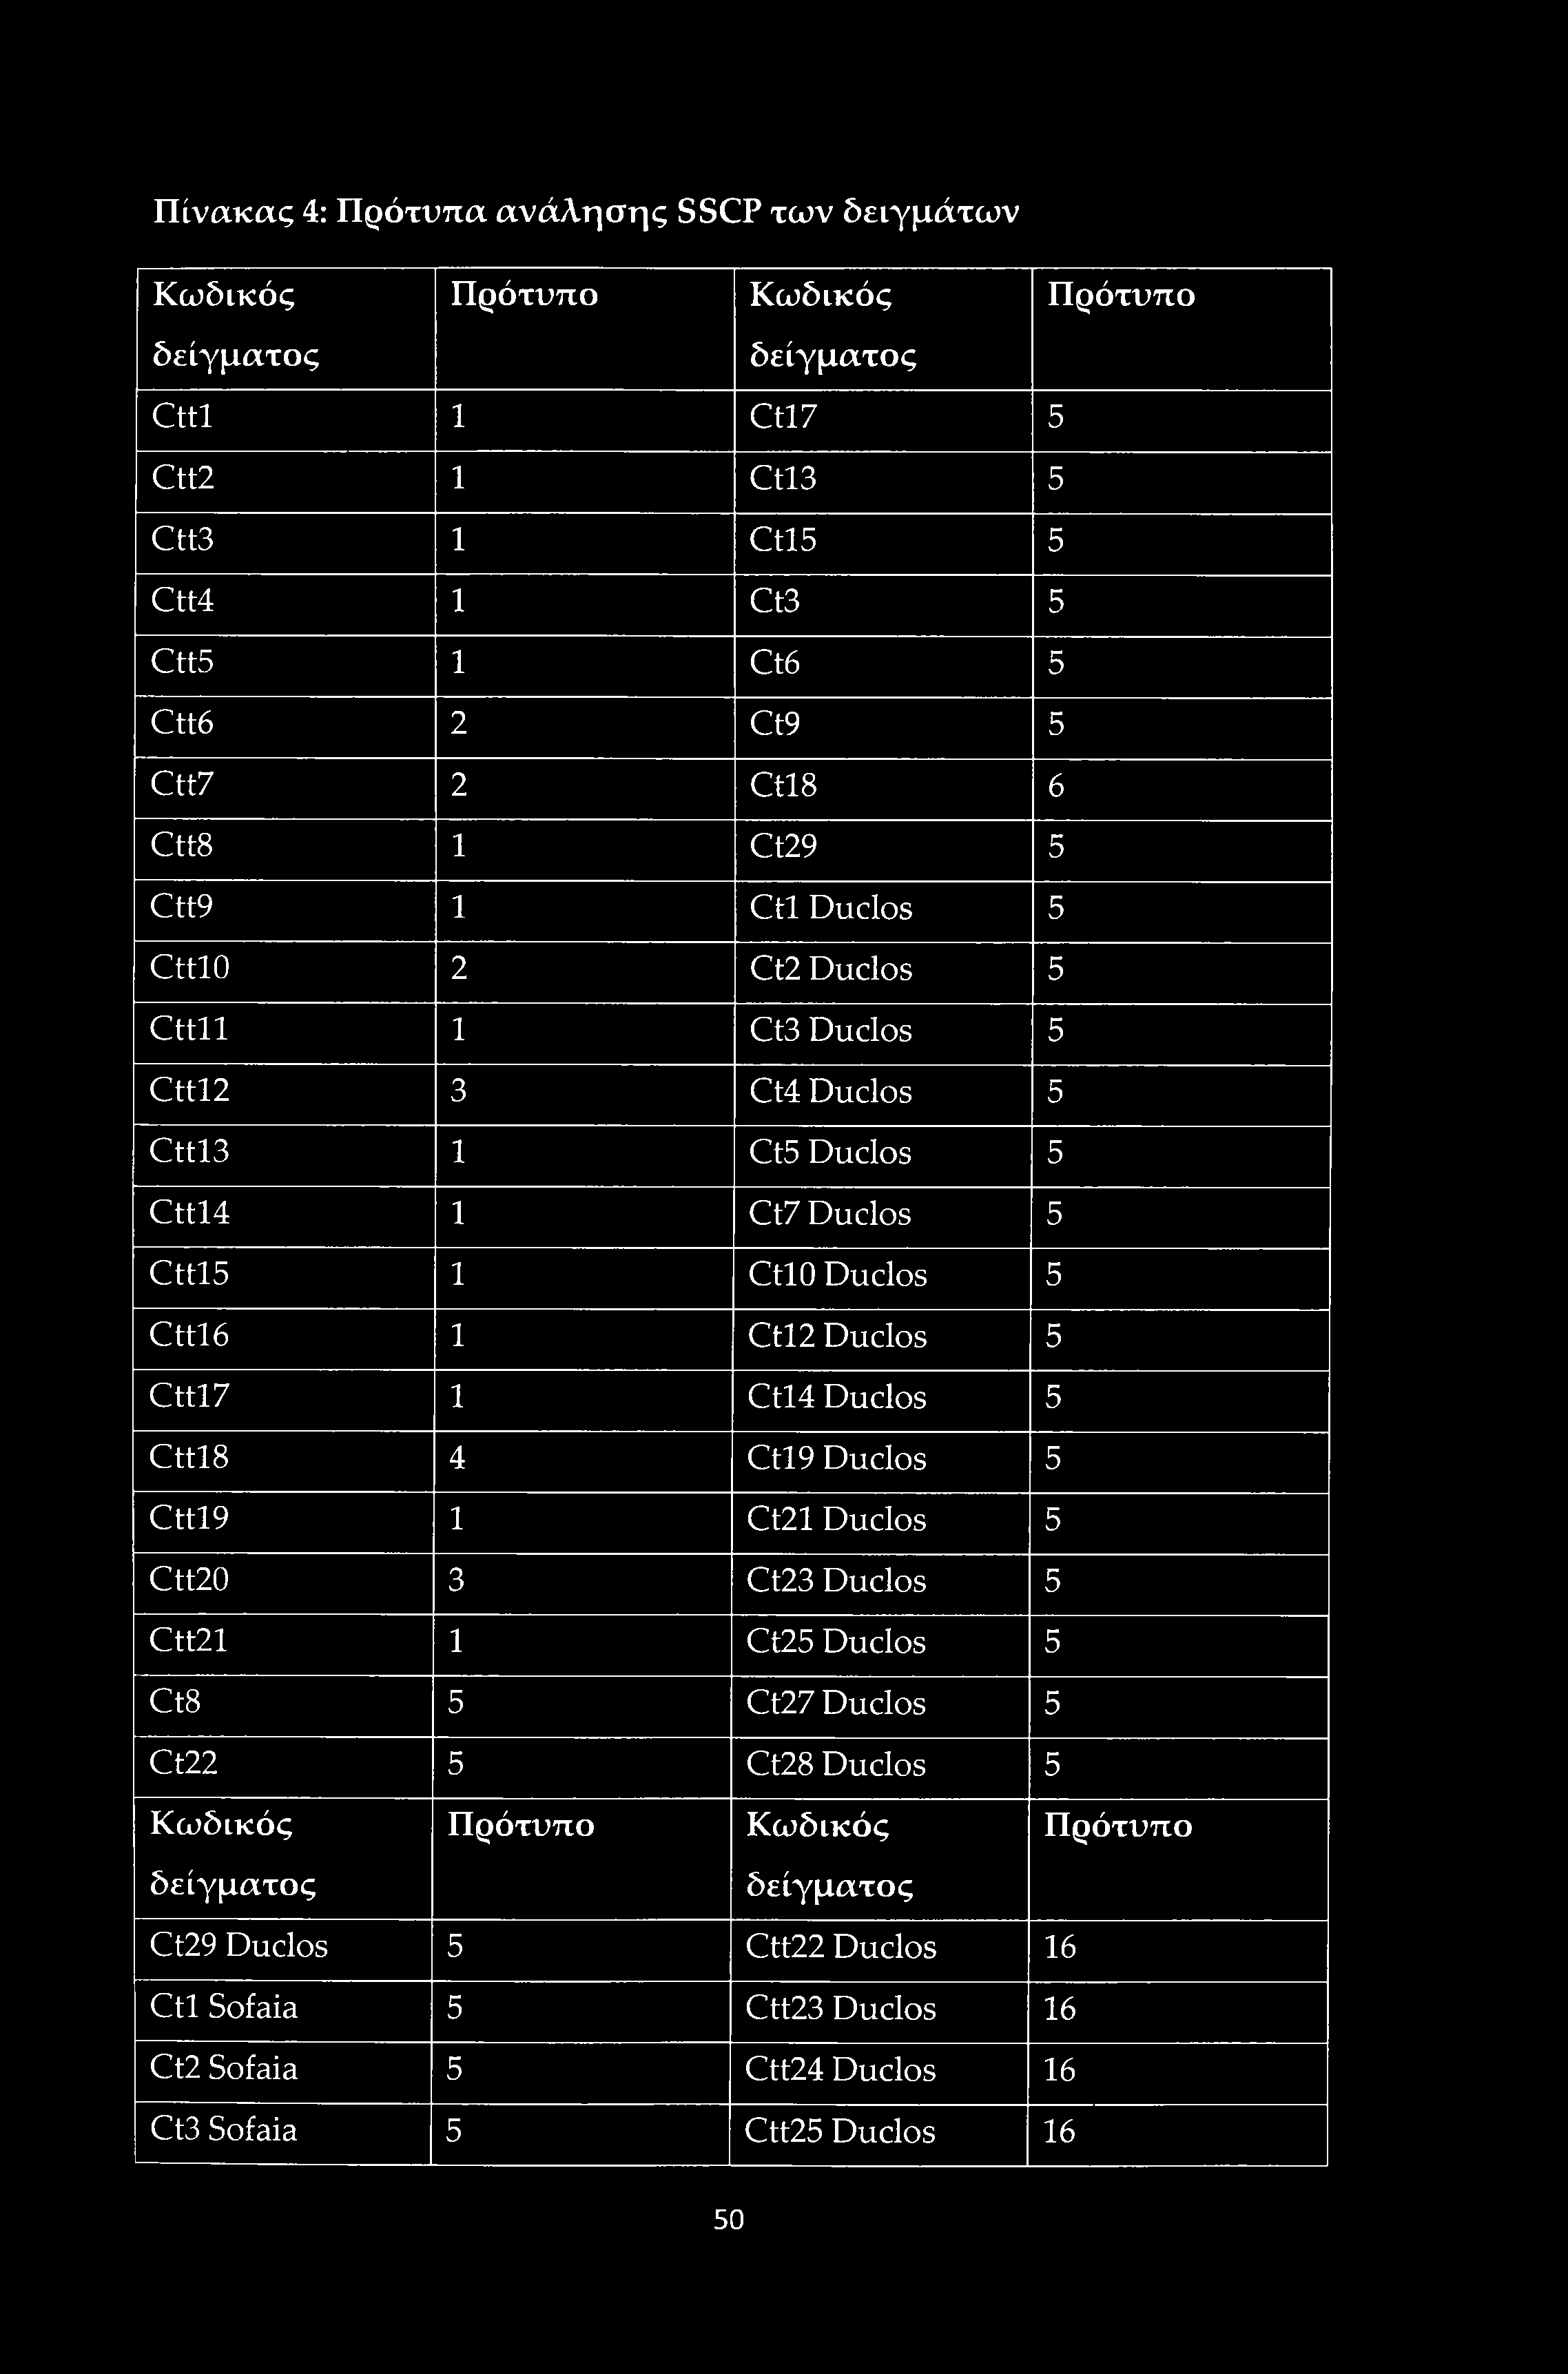 Πίνακας 4: Πρότυπα ανάλησης SSCP των δειγμάτων Κωδικός Πρότυπο Κωδικός Πρότυπο δείγματος δείγματος Cttl 1 Ctl7 5 Ctt2 1 Ctl3 5 Ctt3 1 Ctl5 5 Ctt4 1 Ct3 5 Ctt5 1 Ct6 5 Ctt6 2 Ct9 5 Ctt7 2 Ctl8 6 Ctt8